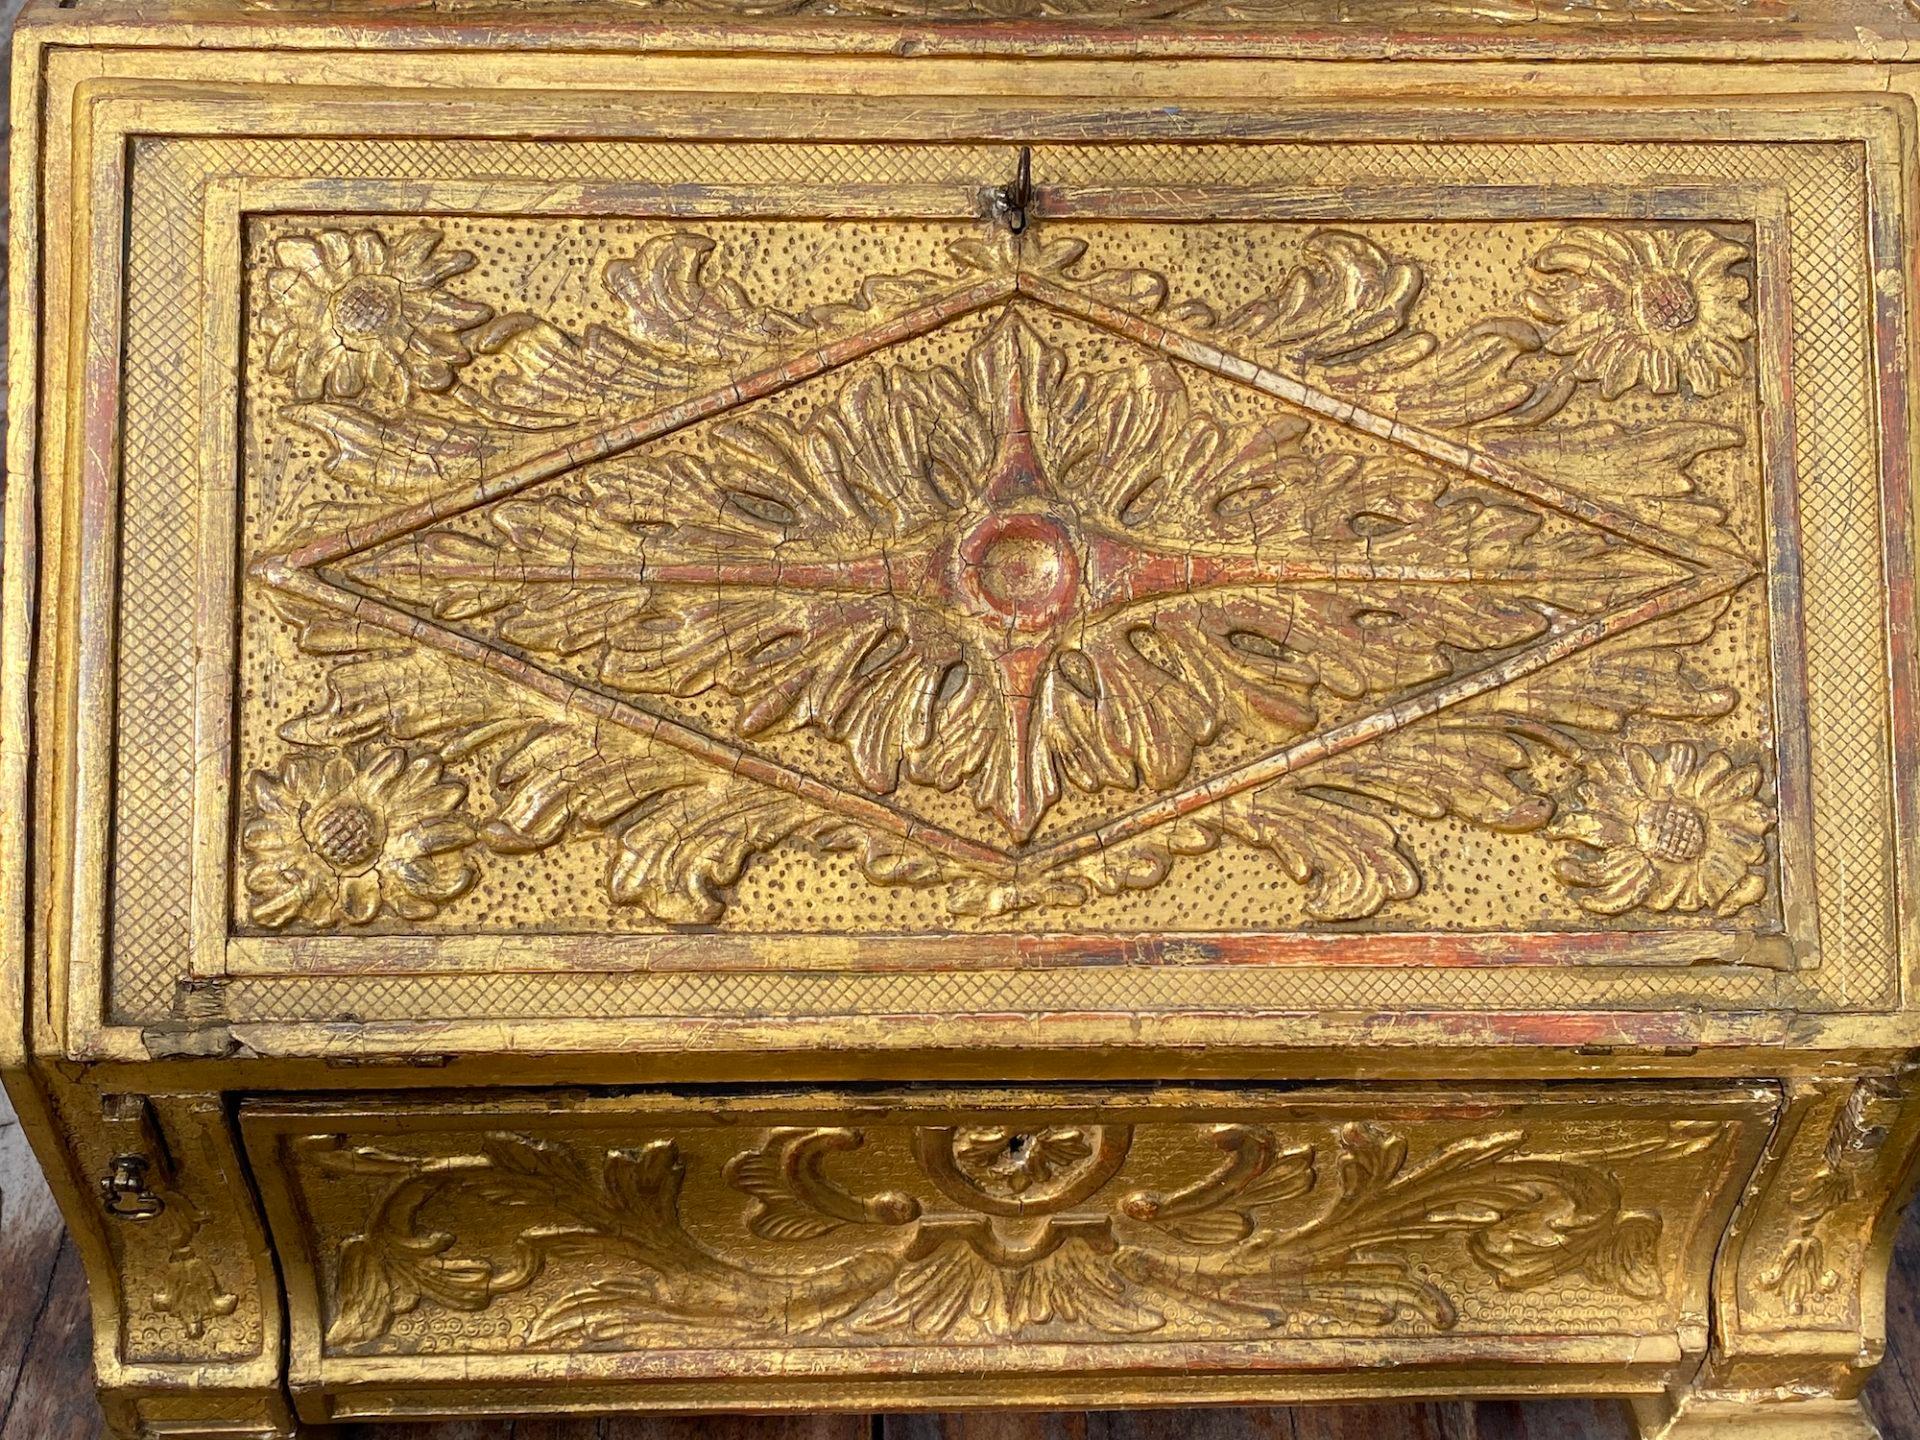 Un très rare miroir de coiffeuse en gesso sculpté et doré. 
Période reine Anne / George I, vers 1710-20.

Décorée sur toute sa surface de surfaces dorées-gesso originales finement ciselées, avec des réserves circulaires poinçonnées